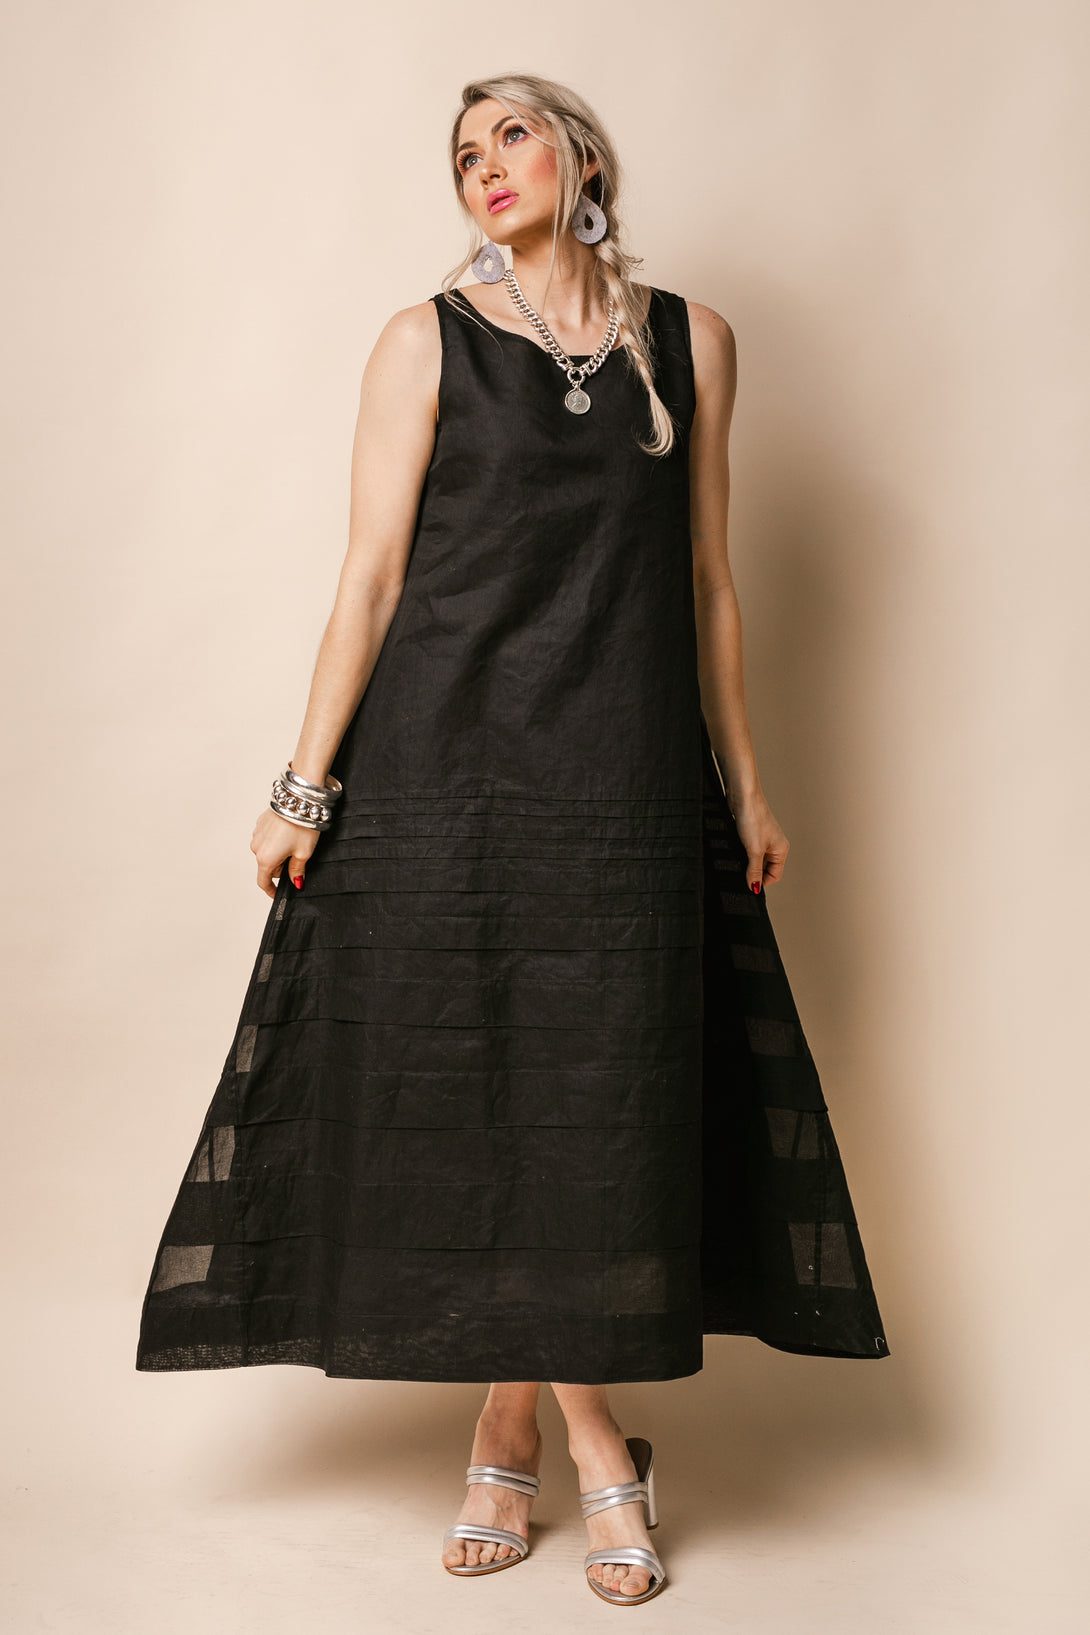 Molly Organza Dress in Onyx - Imagine Fashion